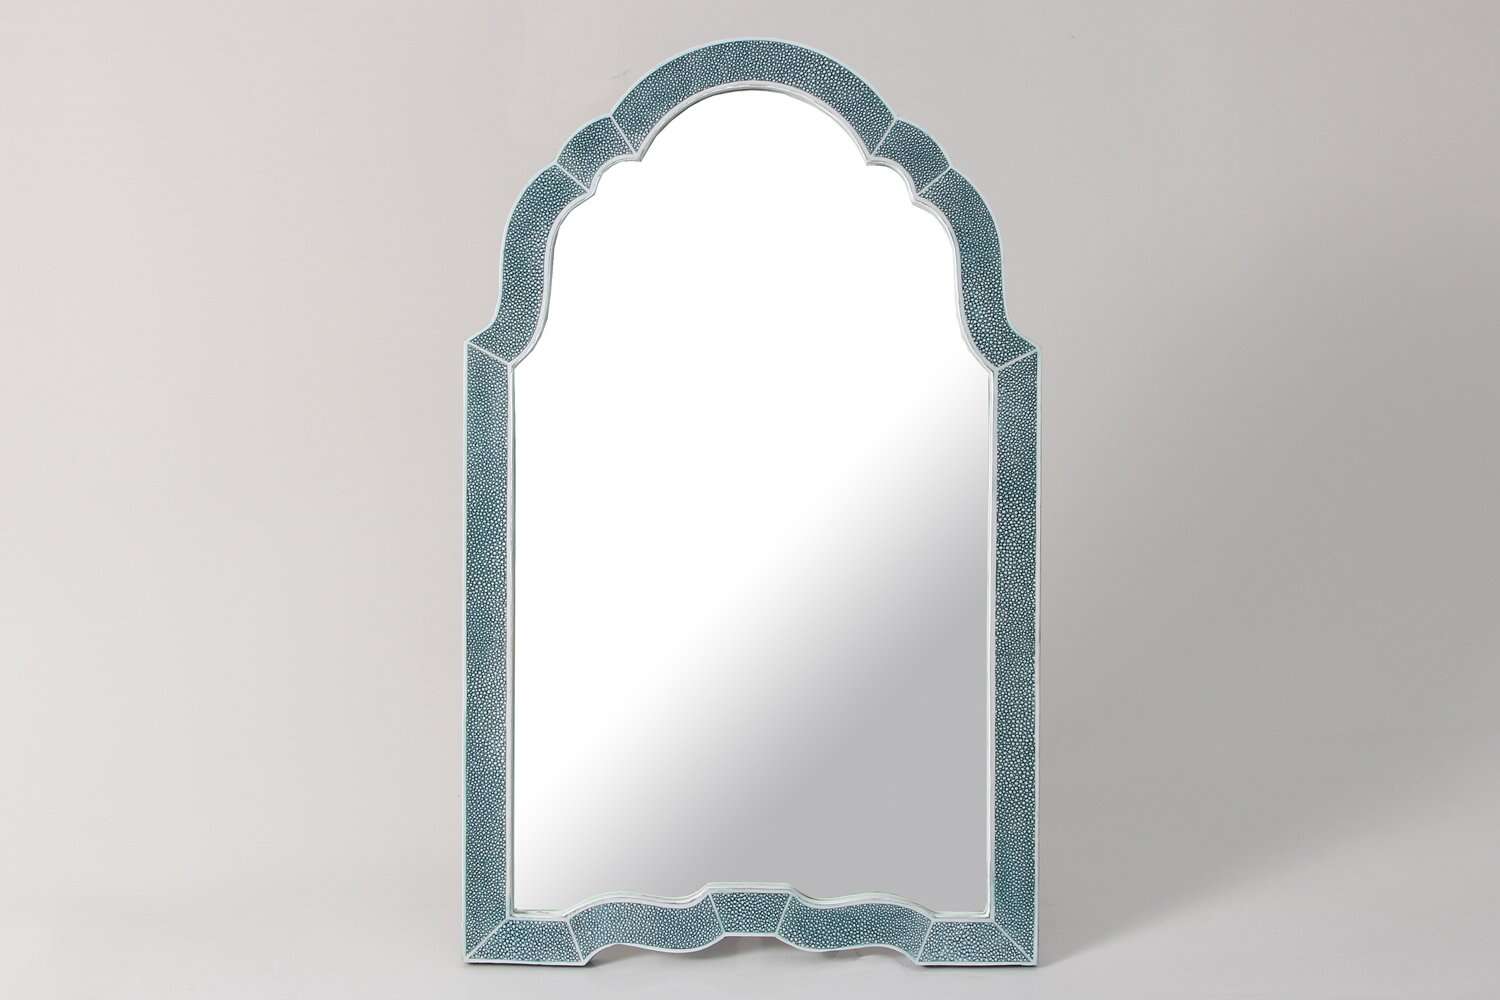  https://forwooddesign.com/app/uploads/2019/07/Teal-shagreen-dressing-table-mirror-1.jpg